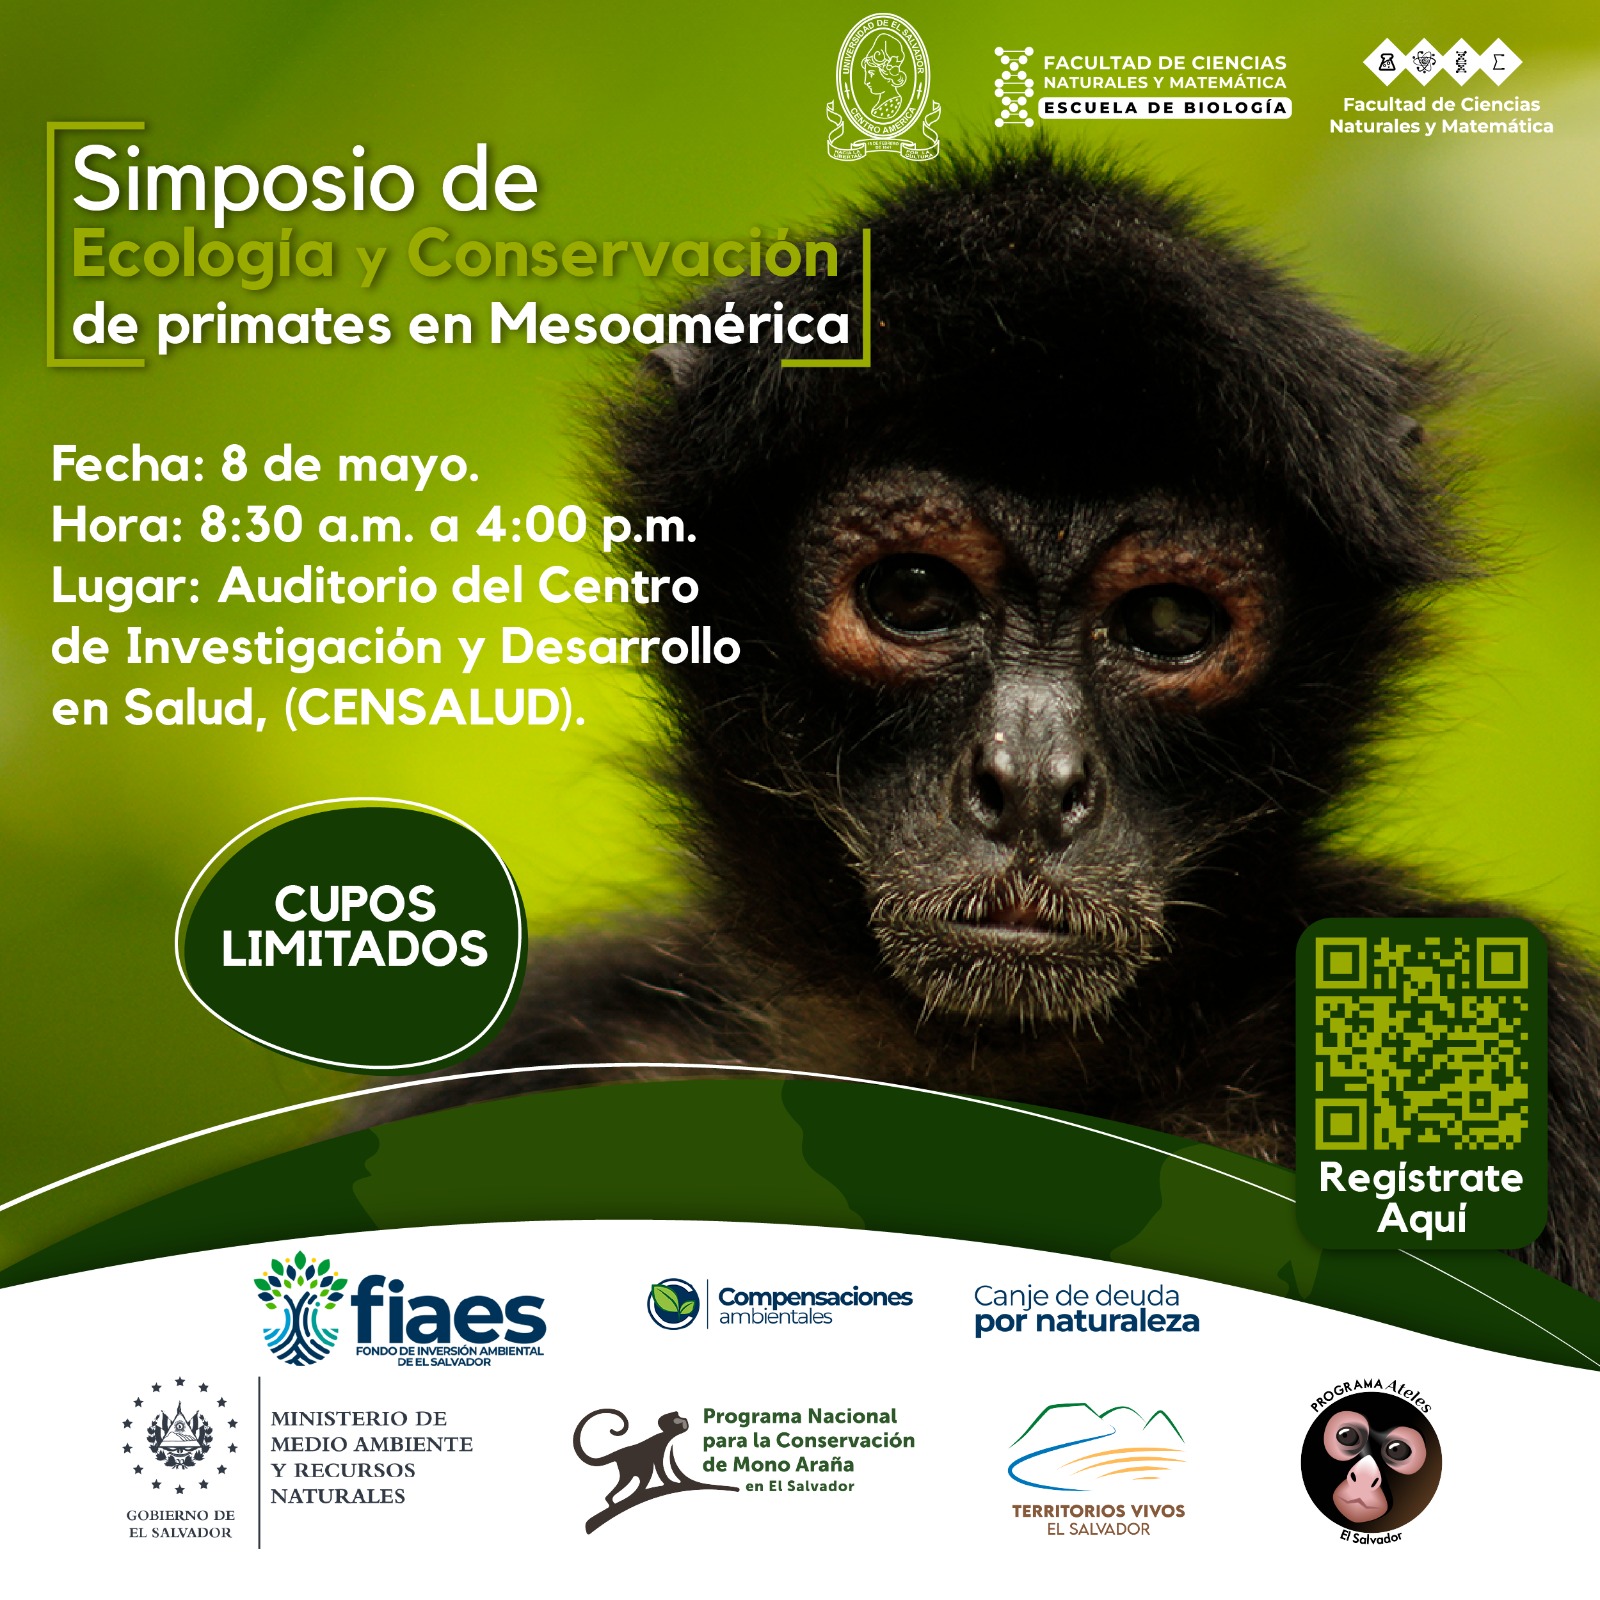 Invitación a participar en simposio de ecología y conservación de primates en Mesoamérica